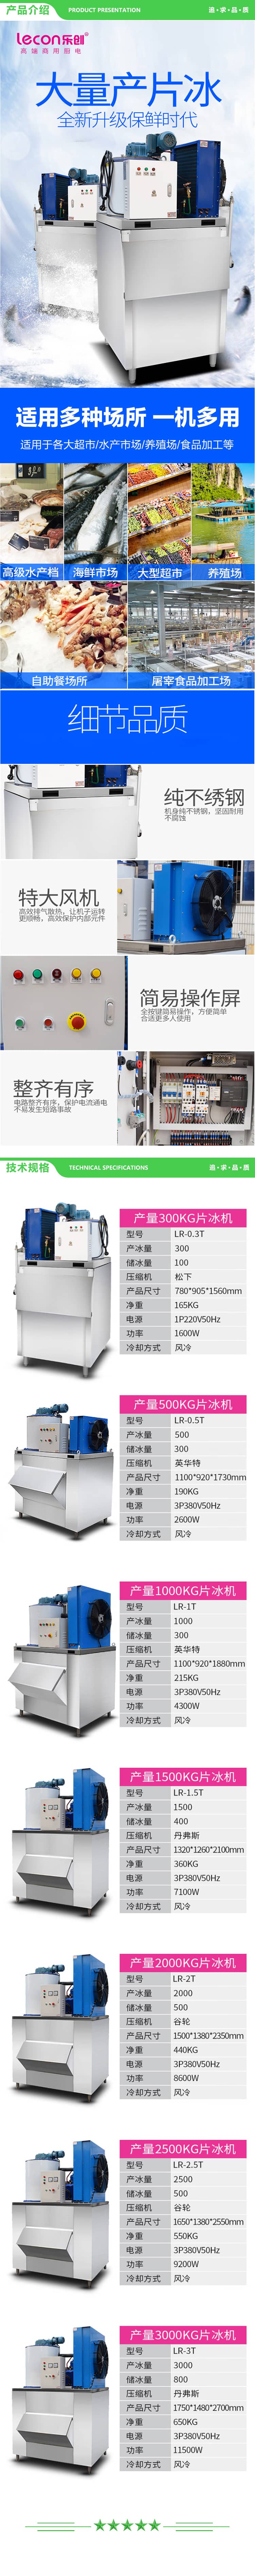 乐创 lecon LR-0.5T 制冰机商用海鲜保鲜片冰机大产量 500KG制冰机 2.jpg